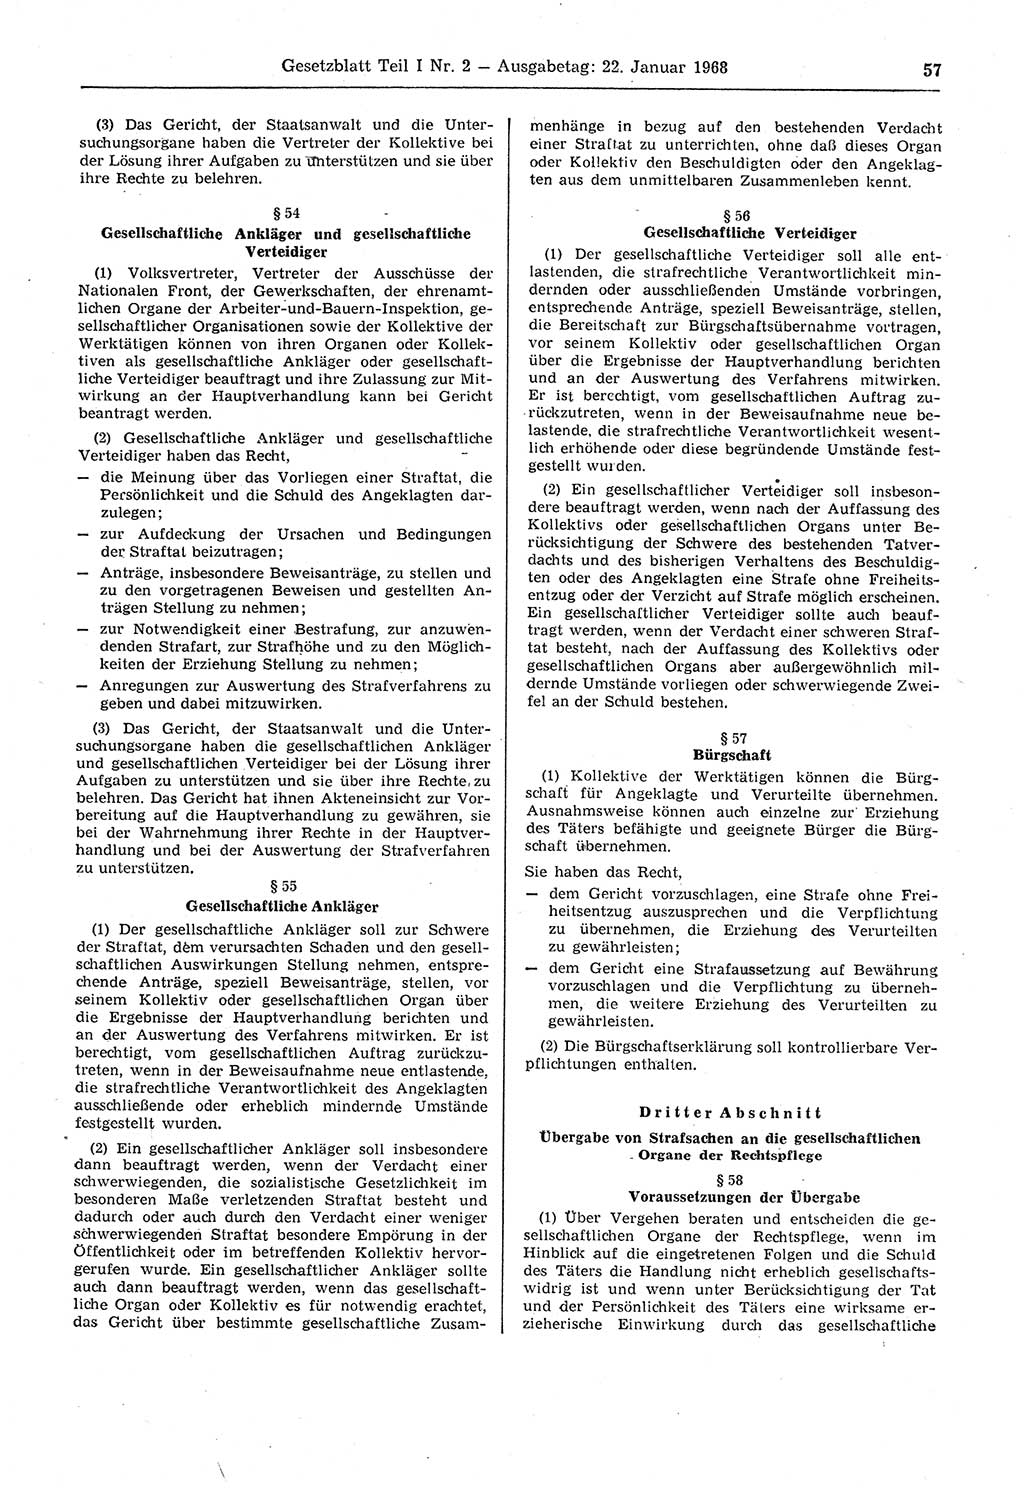 Gesetzblatt (GBl.) der Deutschen Demokratischen Republik (DDR) Teil Ⅰ 1968, Seite 57 (GBl. DDR Ⅰ 1968, S. 57)